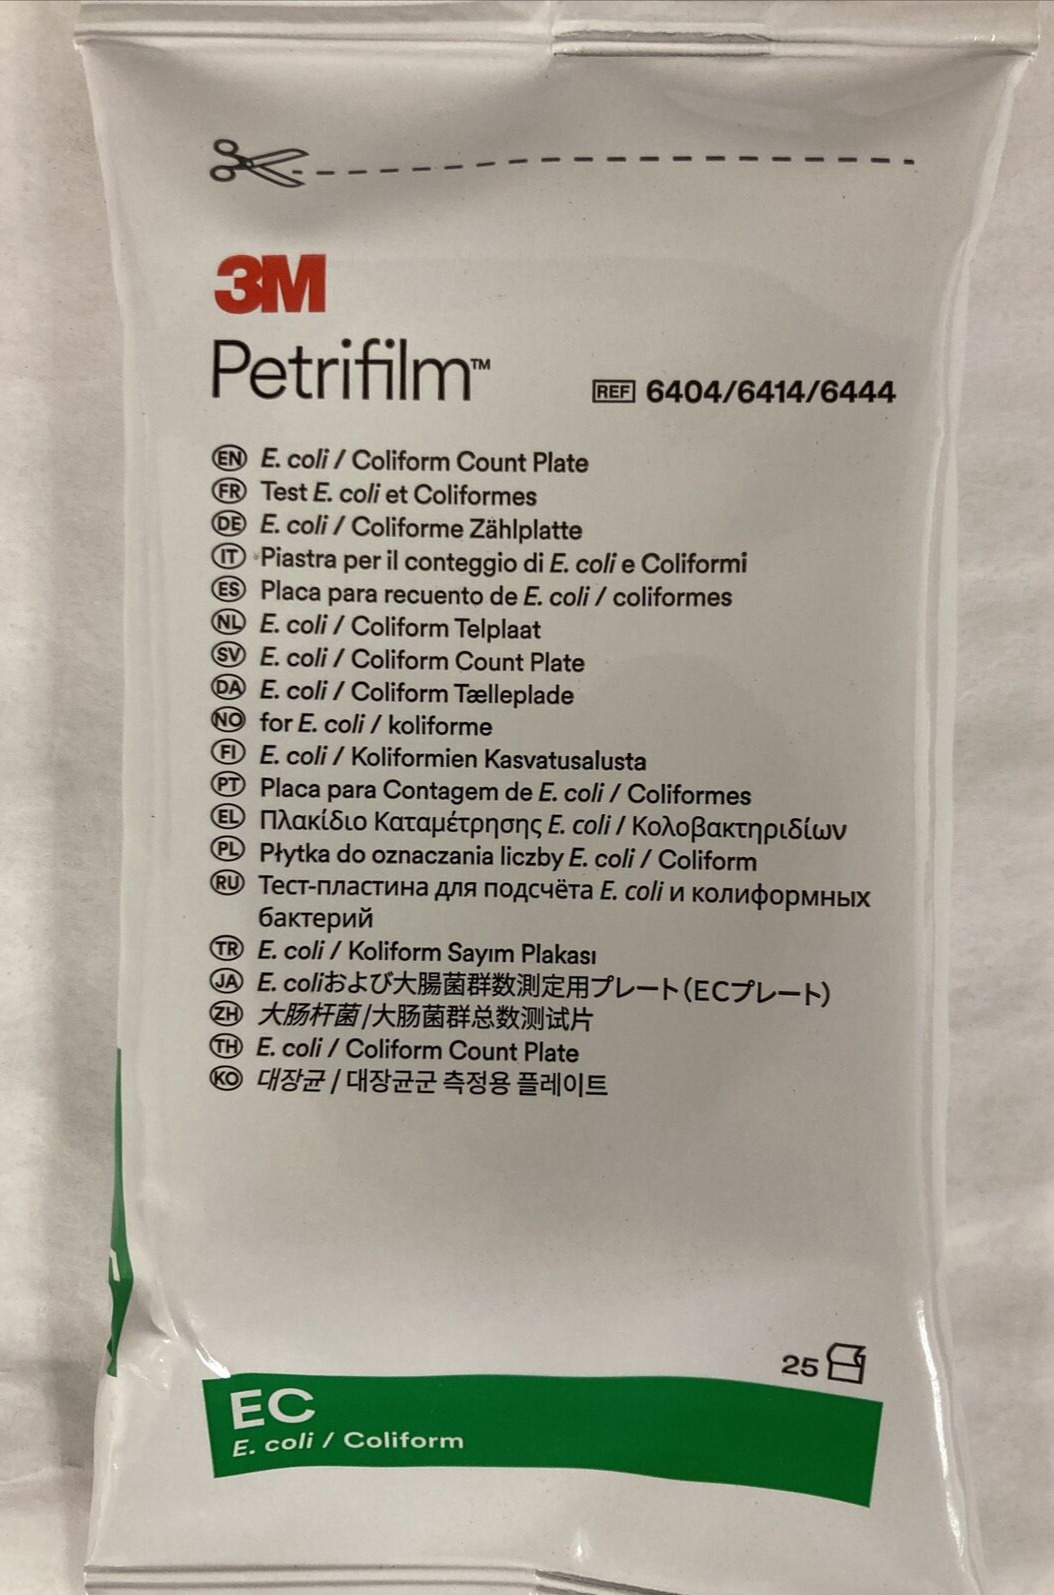 3M Petrifilm, E.coli/Coliform Count Plates, 25 COUNT